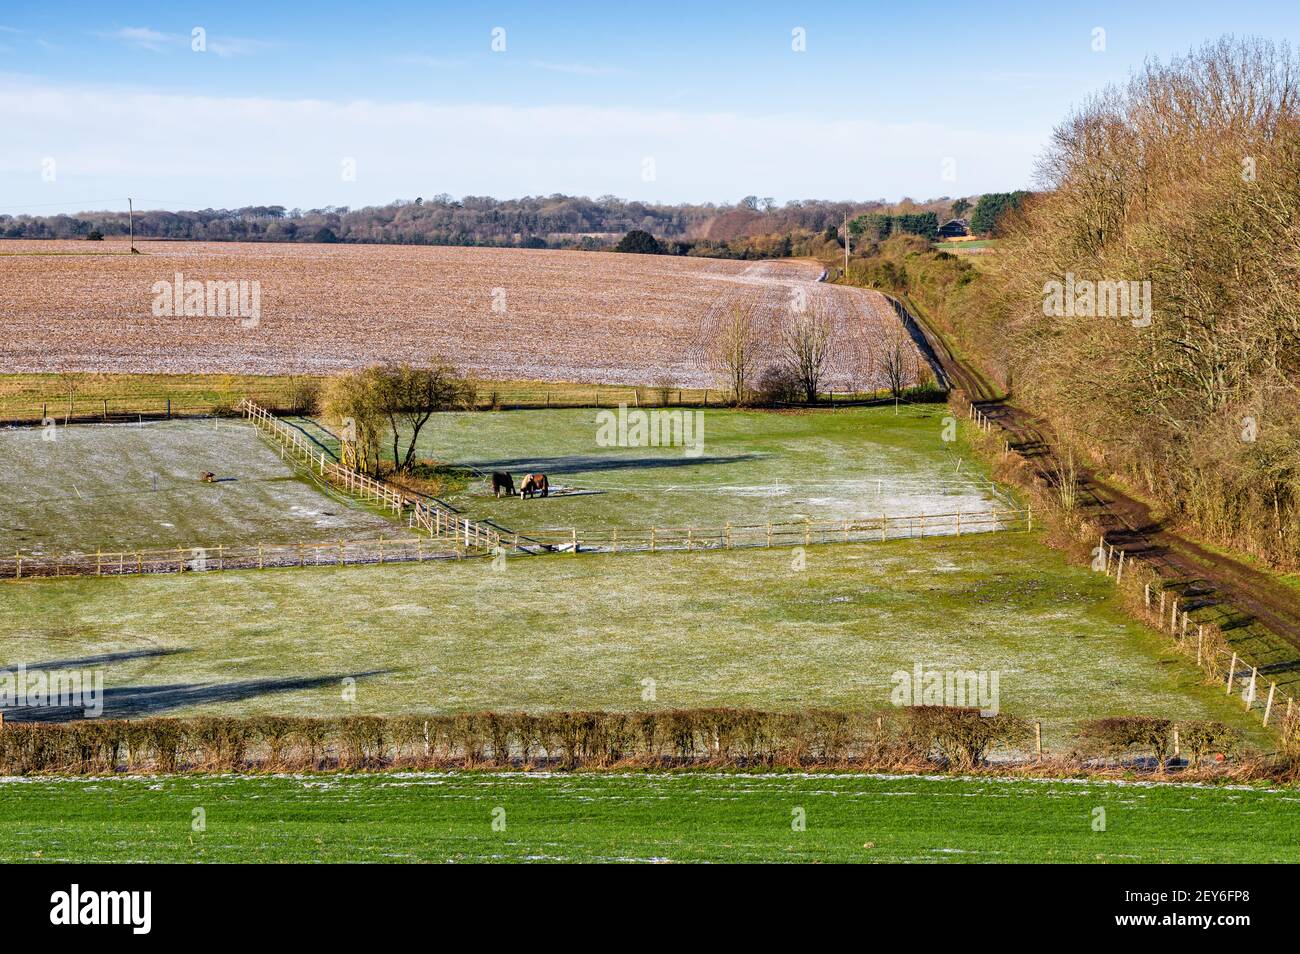 Deux chevaux dans un champ dans la campagne rurale du Hampshire un matin gelé. Angleterre. Banque D'Images